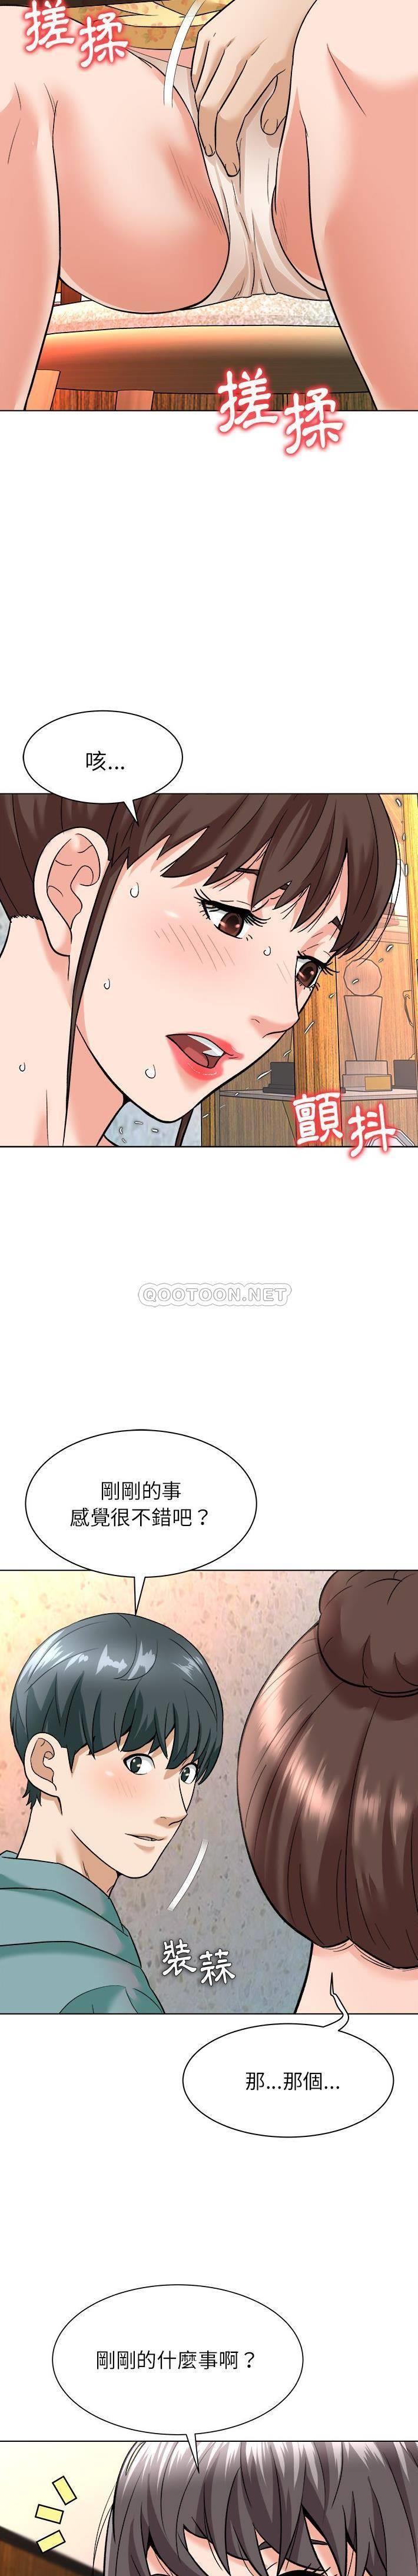 韩国污漫画 豪賭陷阱 第7话 13